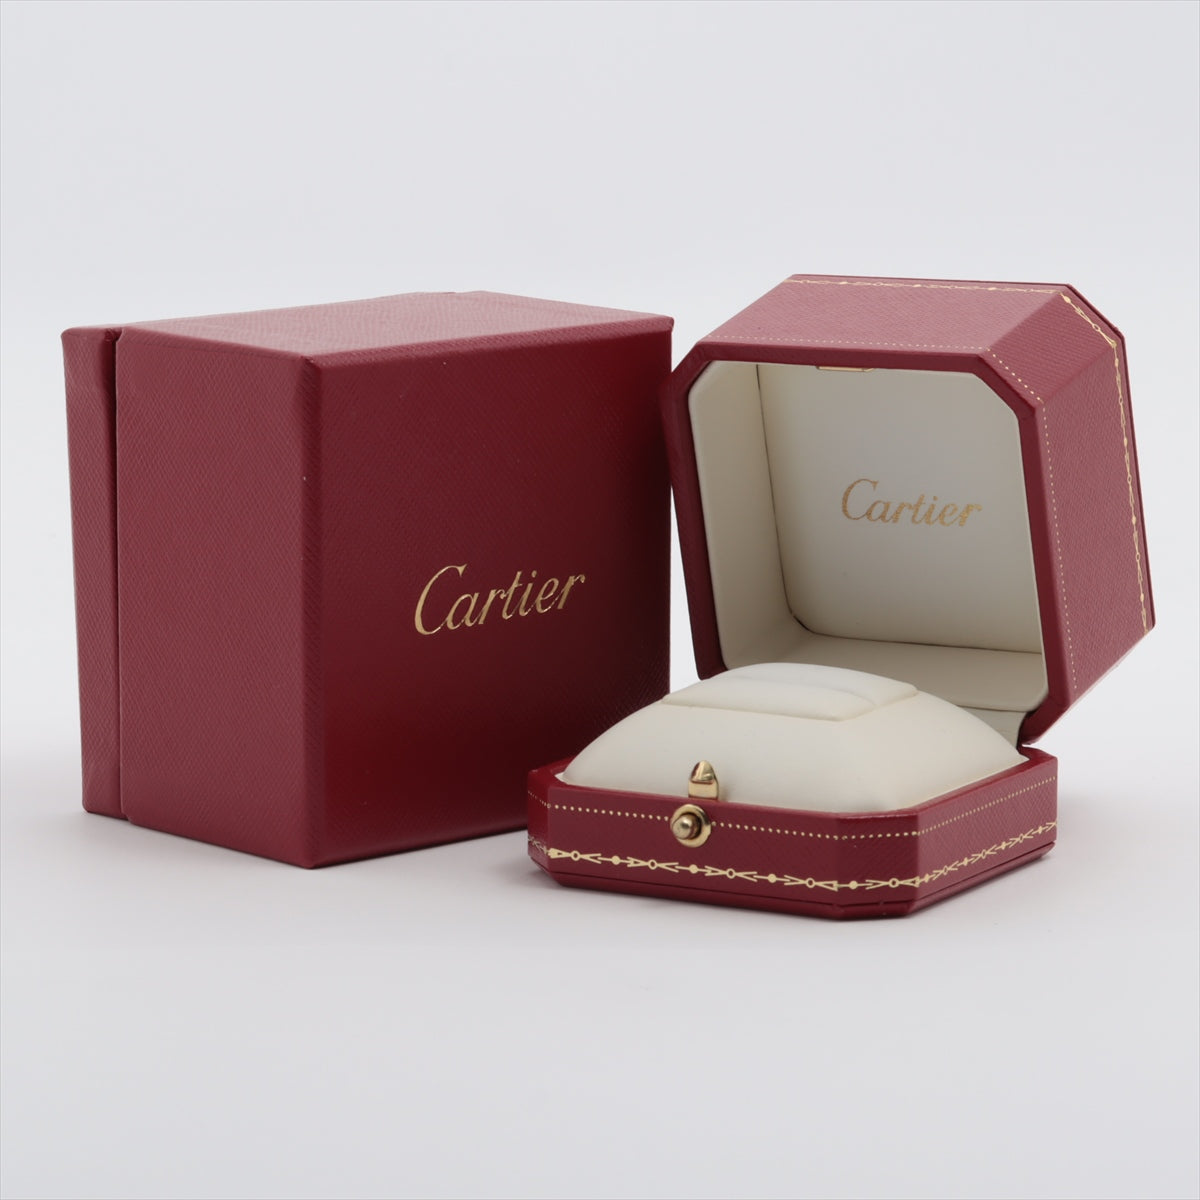 Cartier Valerie Full Ethanity Diamond Ring 750 (WG) 2.7g